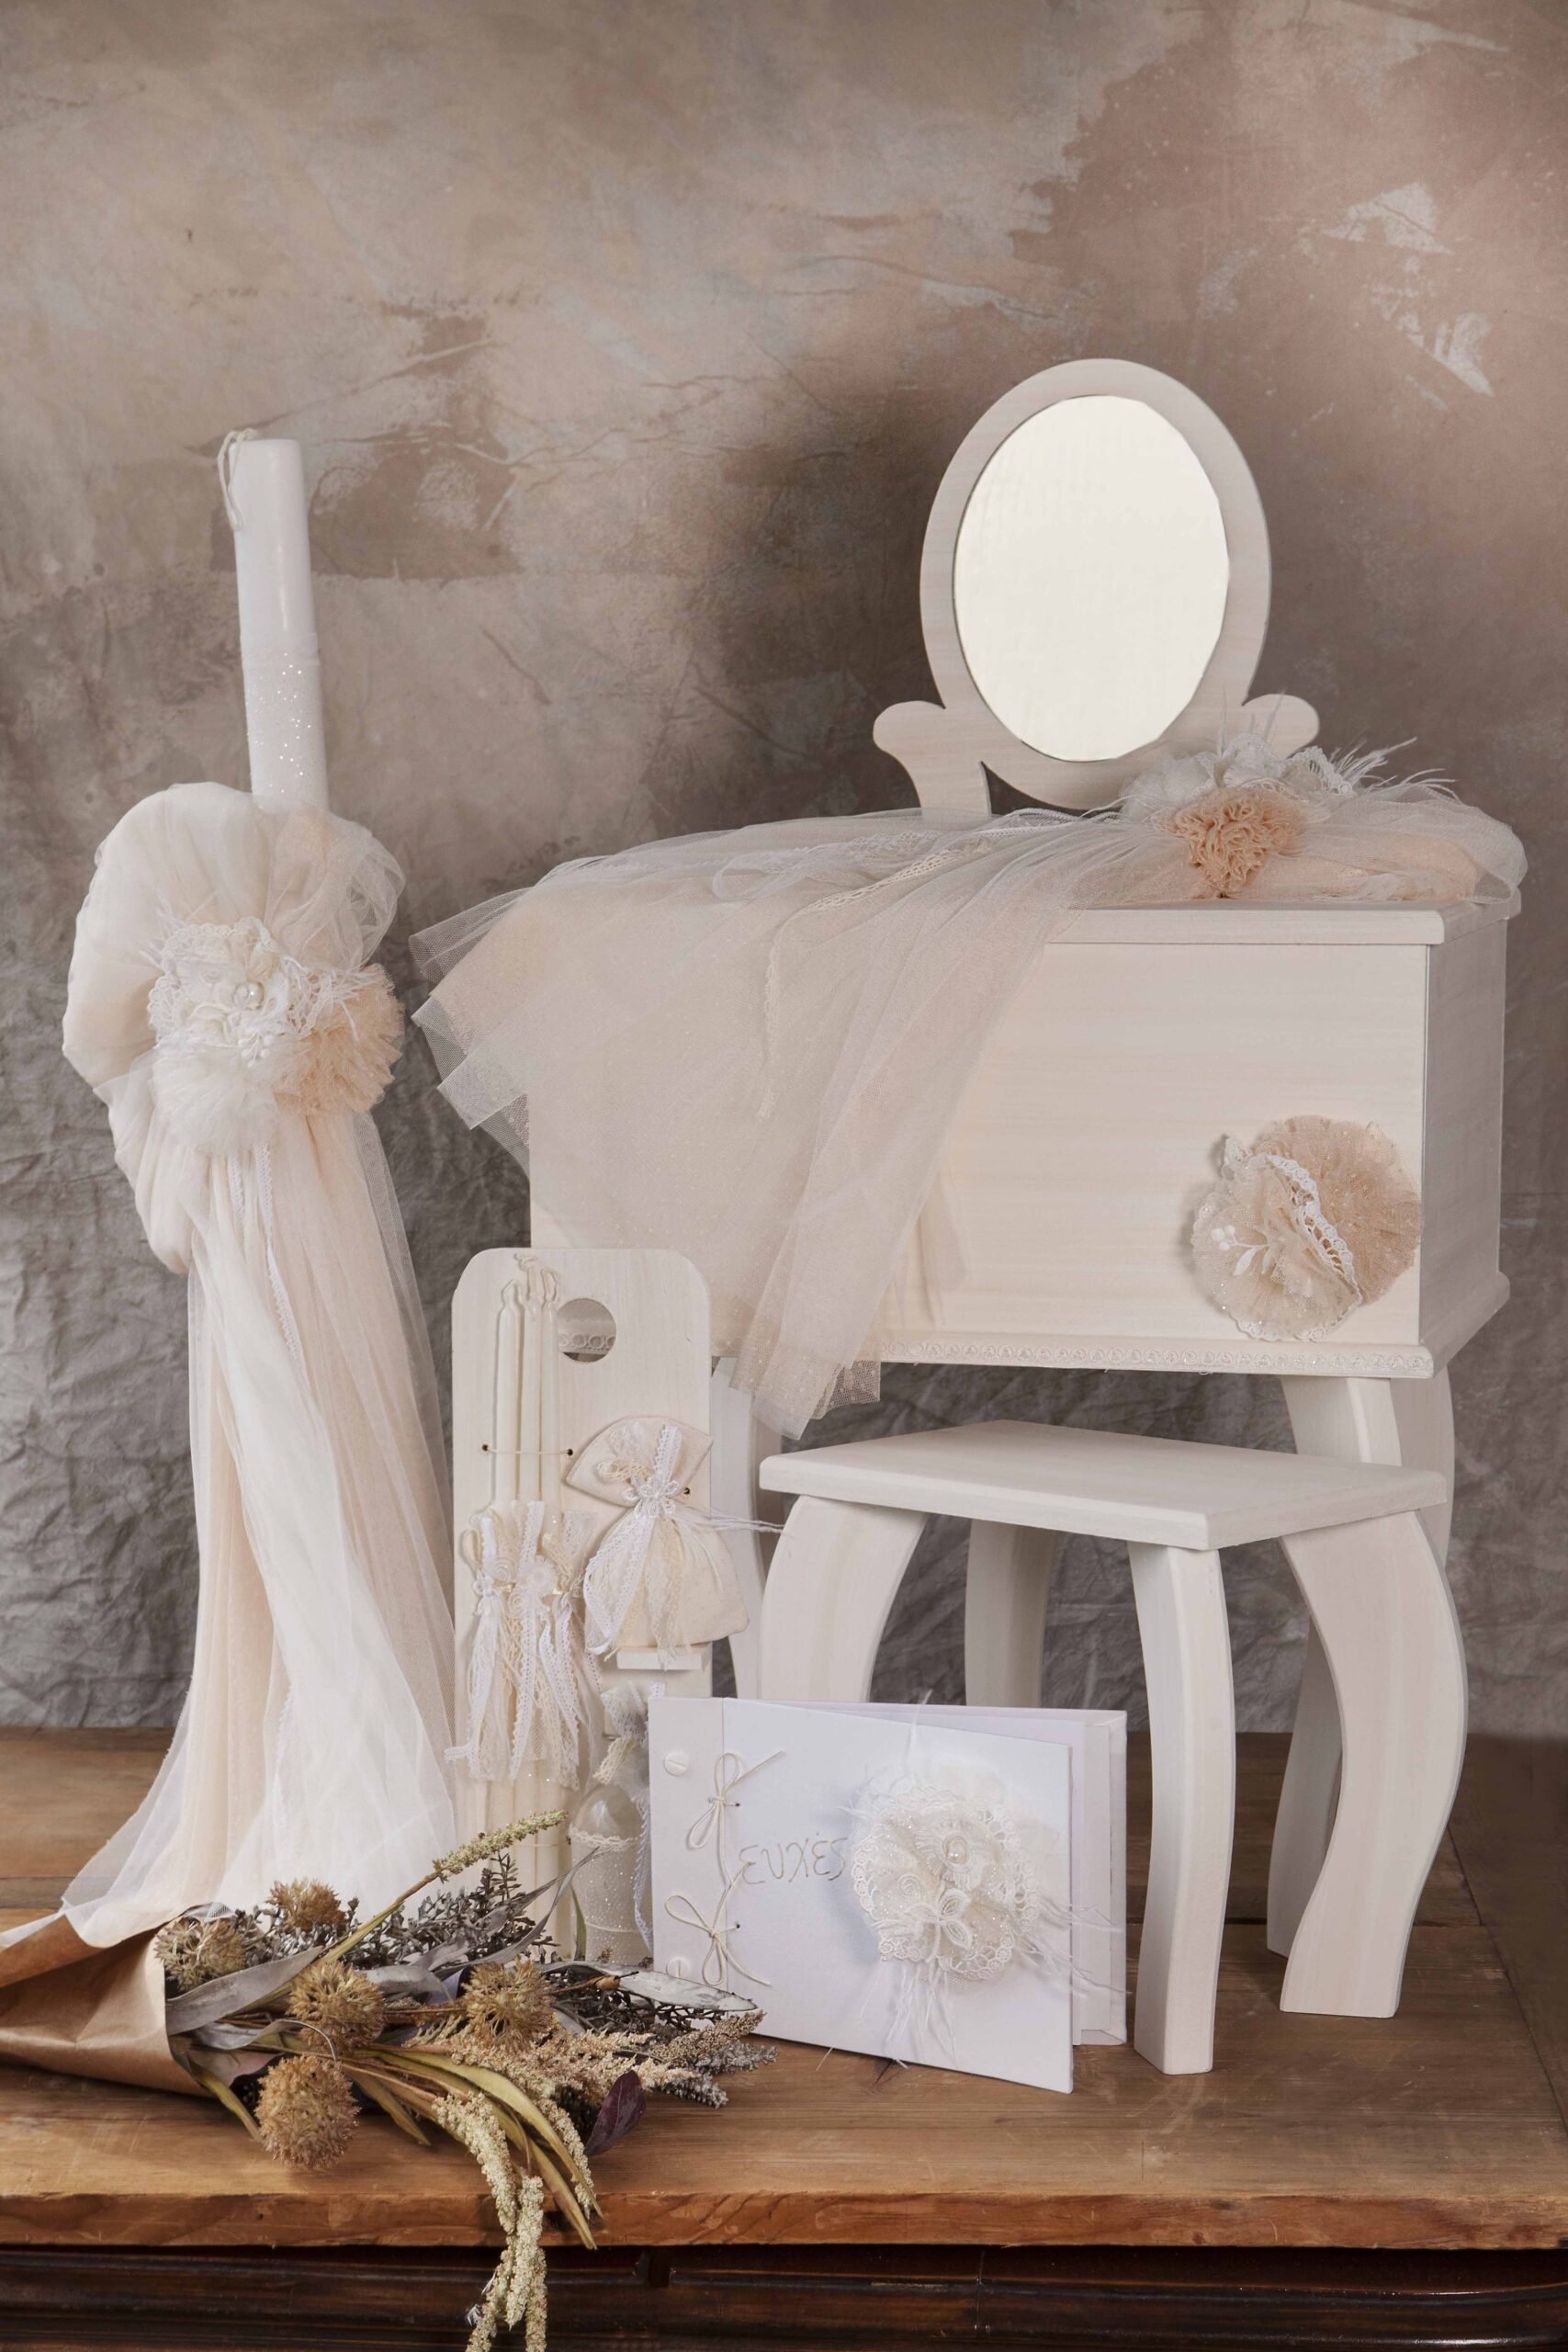 τουαλέτα μπουντουάρ βάπτισης για κορίτσι με καθρέφτη ρομαντικό vintage τούλια δαντέλα λουλούδια σετ πακέτο : 1